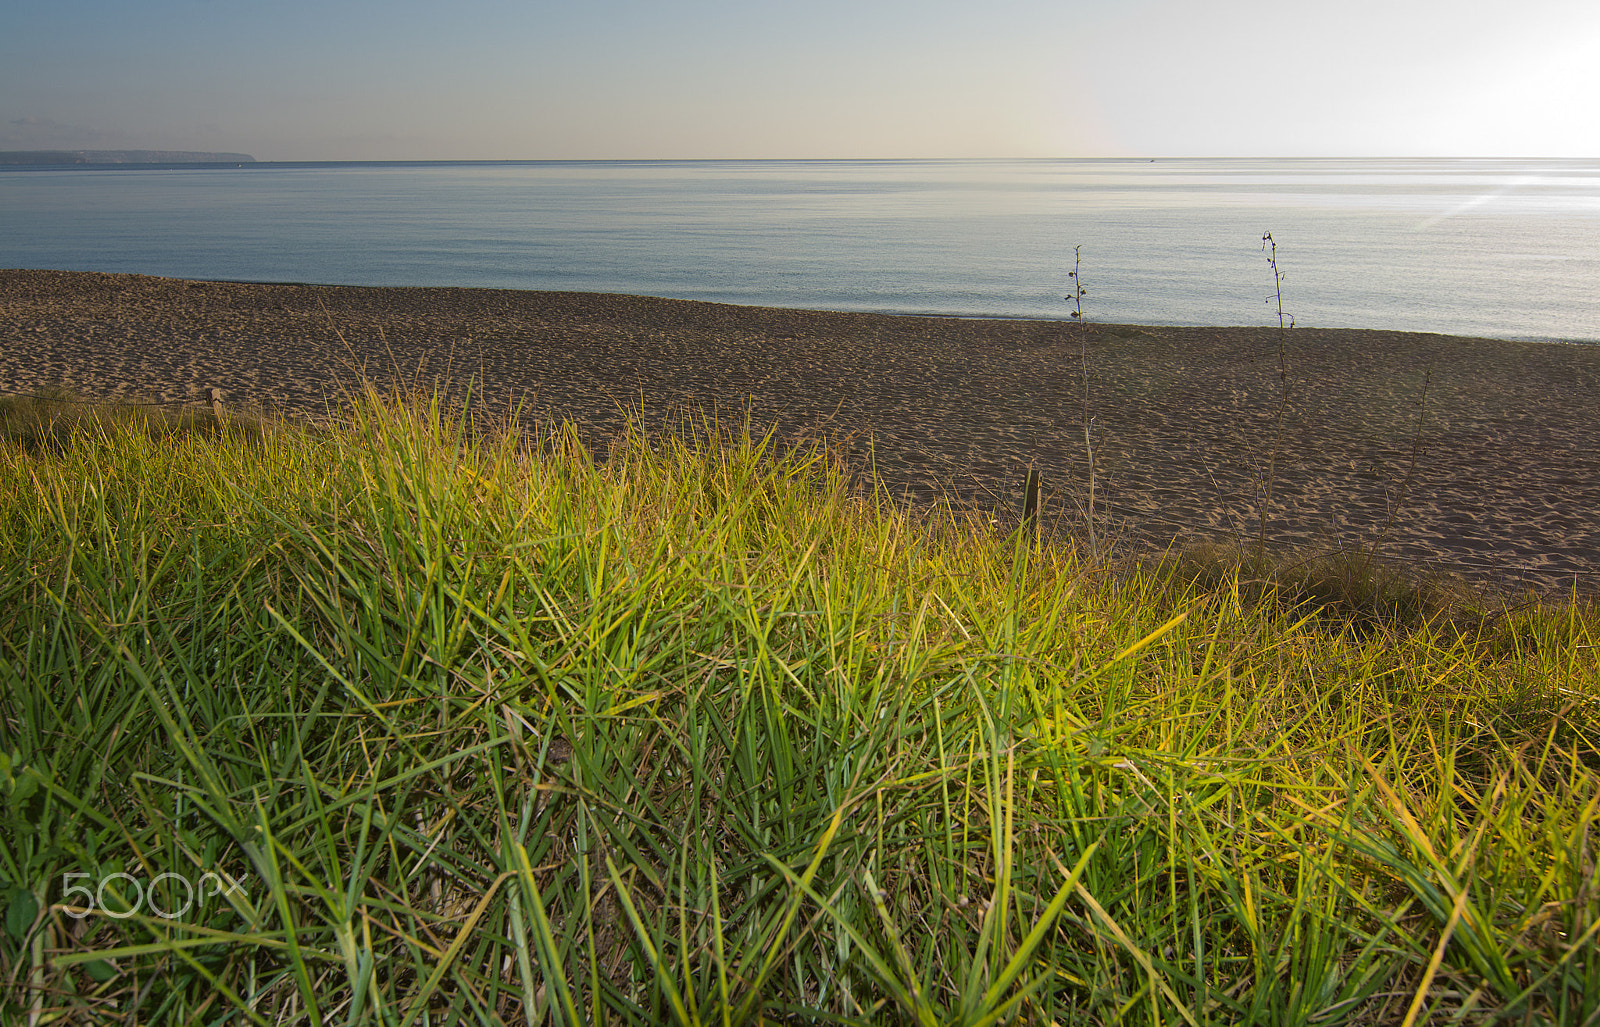 Zeiss Milvus 35mm f/2 sample photo. Green grass near beach photography